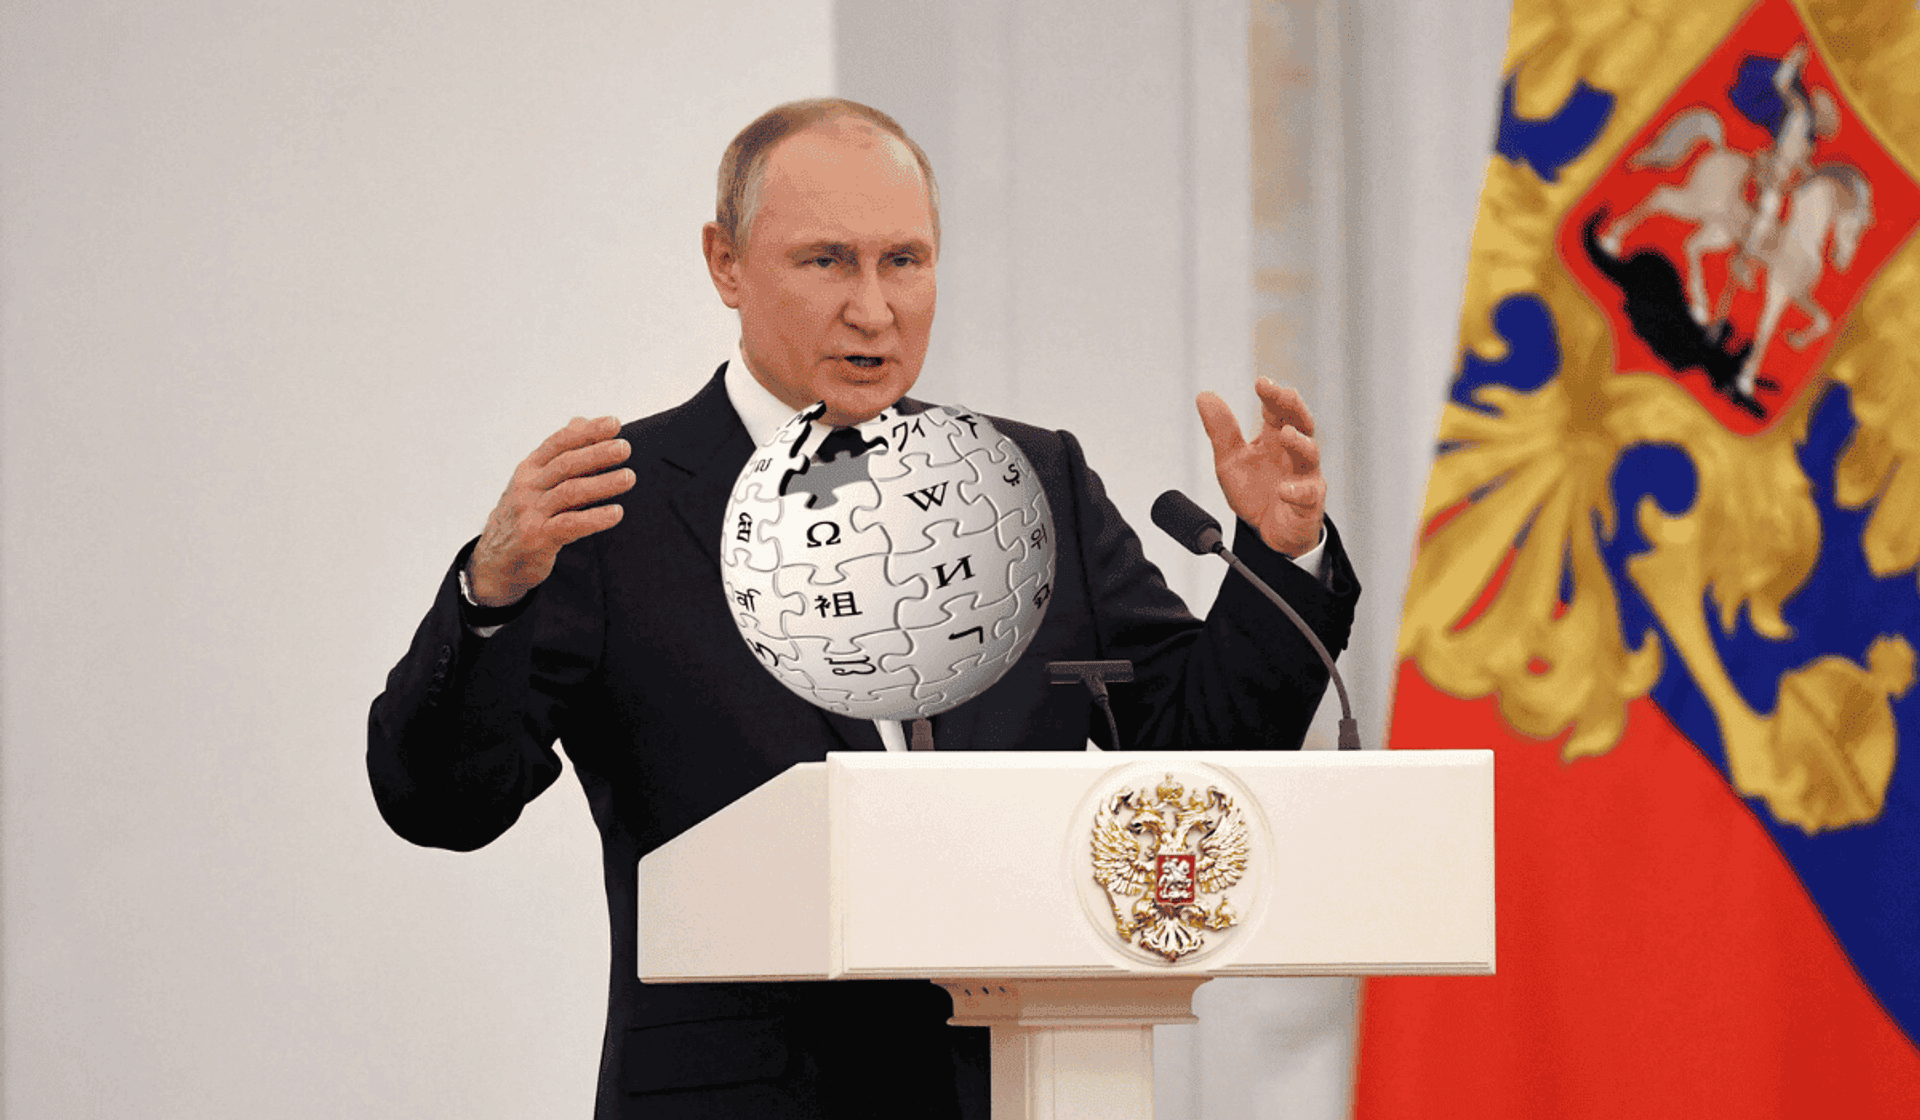 Rosja planuje uruchomienie własnej Wikipedii